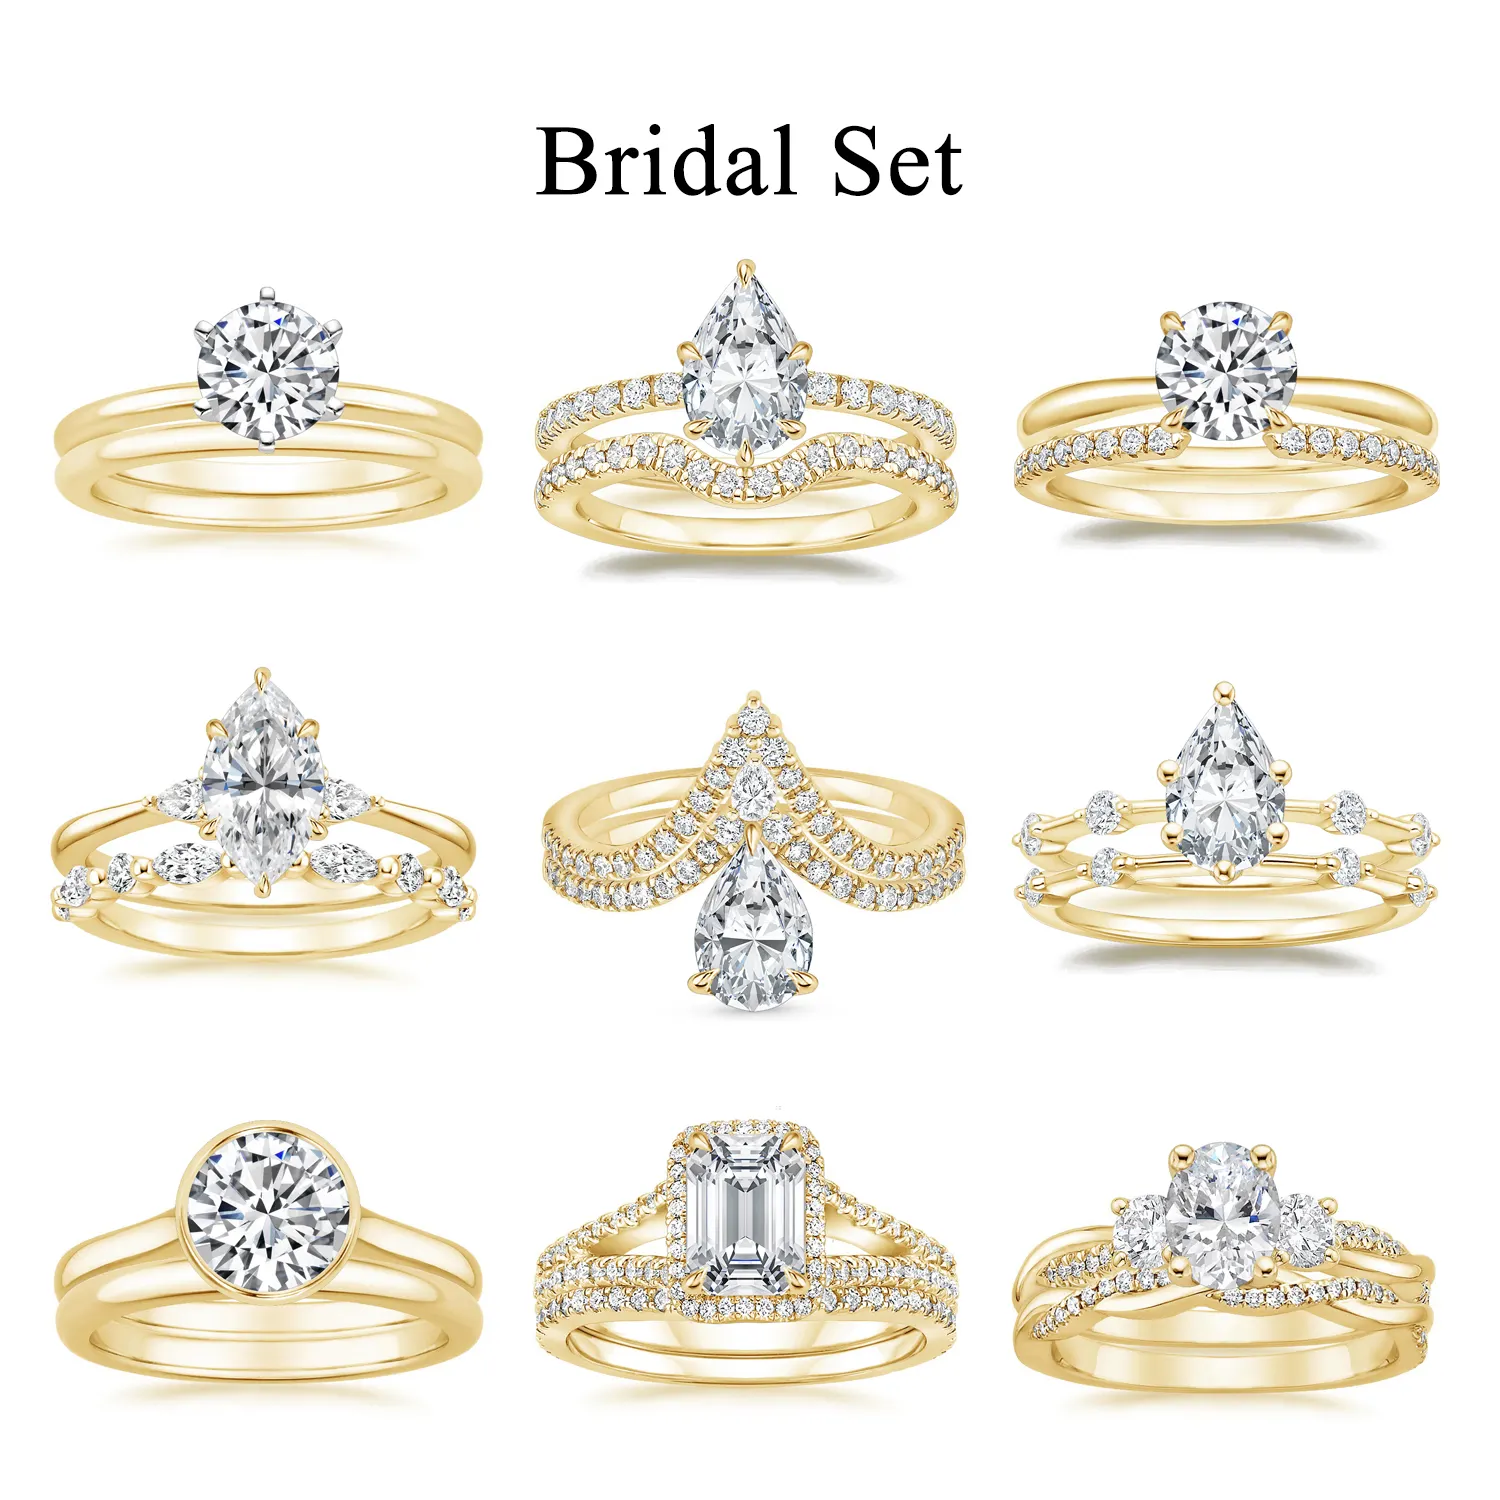 Abiding Custom Real Gold Jewelry Factory Engagement Wedding Halo Ring 9K 10K 18K 14K Gold Ring VVS Moissanite for Women